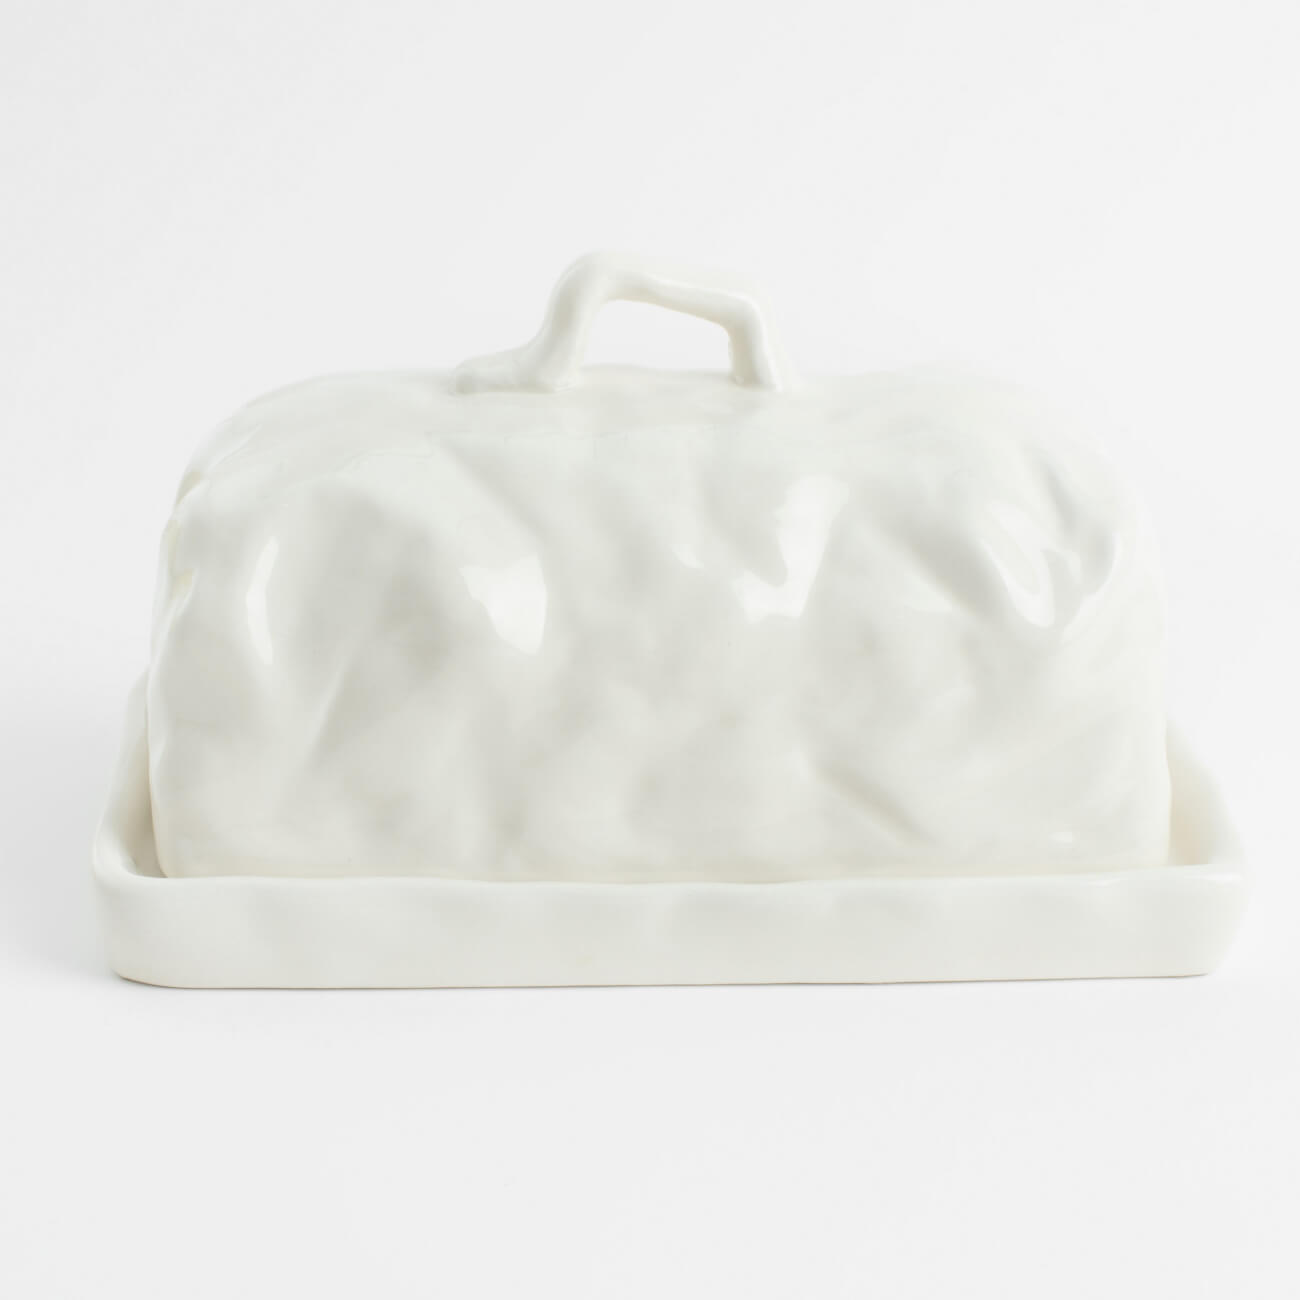 Масленка, 18 см, керамика, прямоугольная, молочная, Мятый эффект, Crumple масленка 16 см керамика прямоугольная белая ceramo